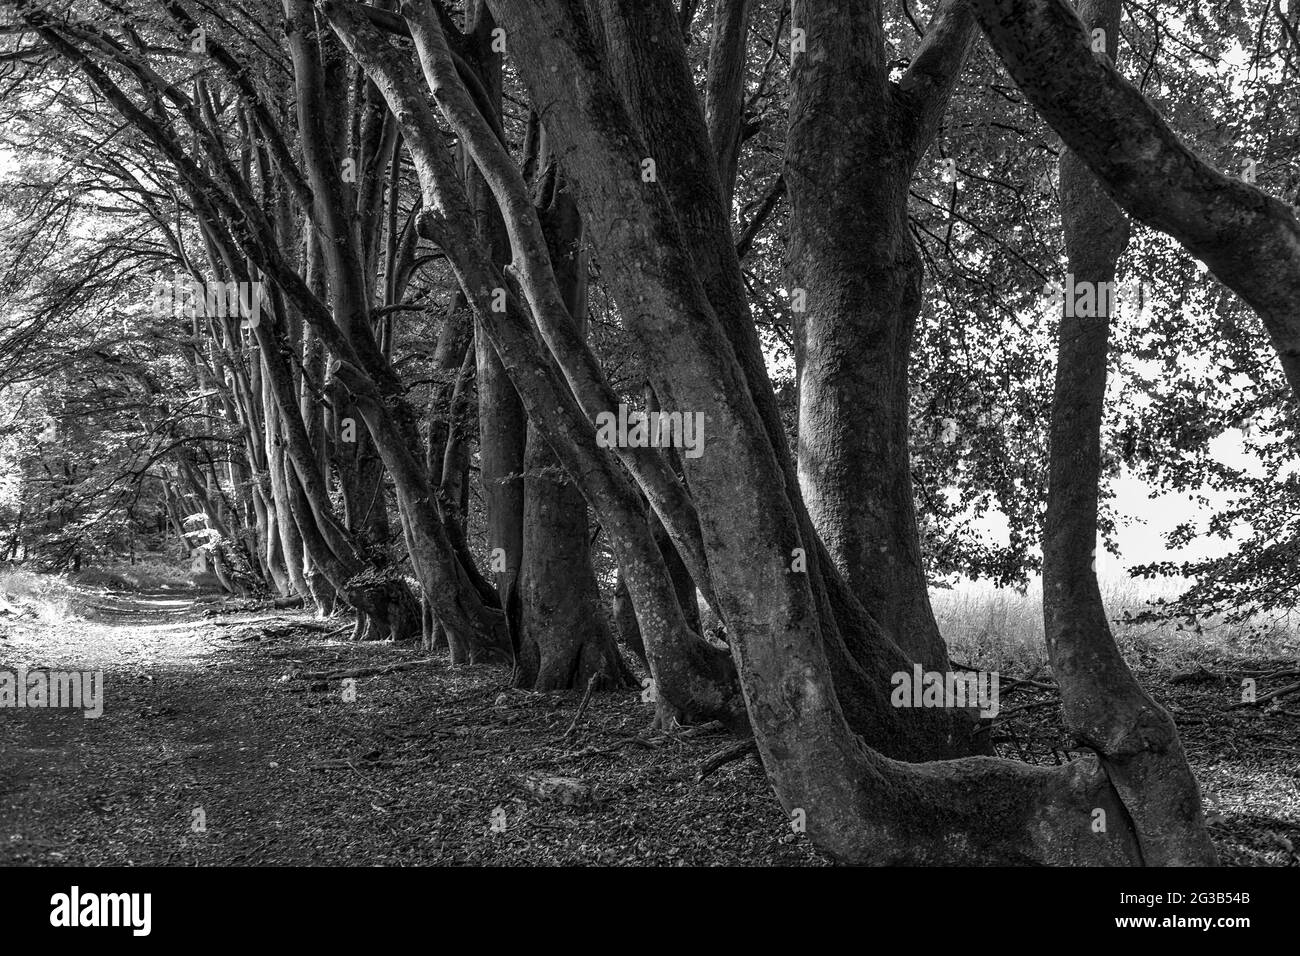 Un sentier le long d'une belle avenue en hêtre près de Chilgrove, South Downs National Park, West Sussex, Angleterre, Royaume-Uni. Version noir et blanc Banque D'Images